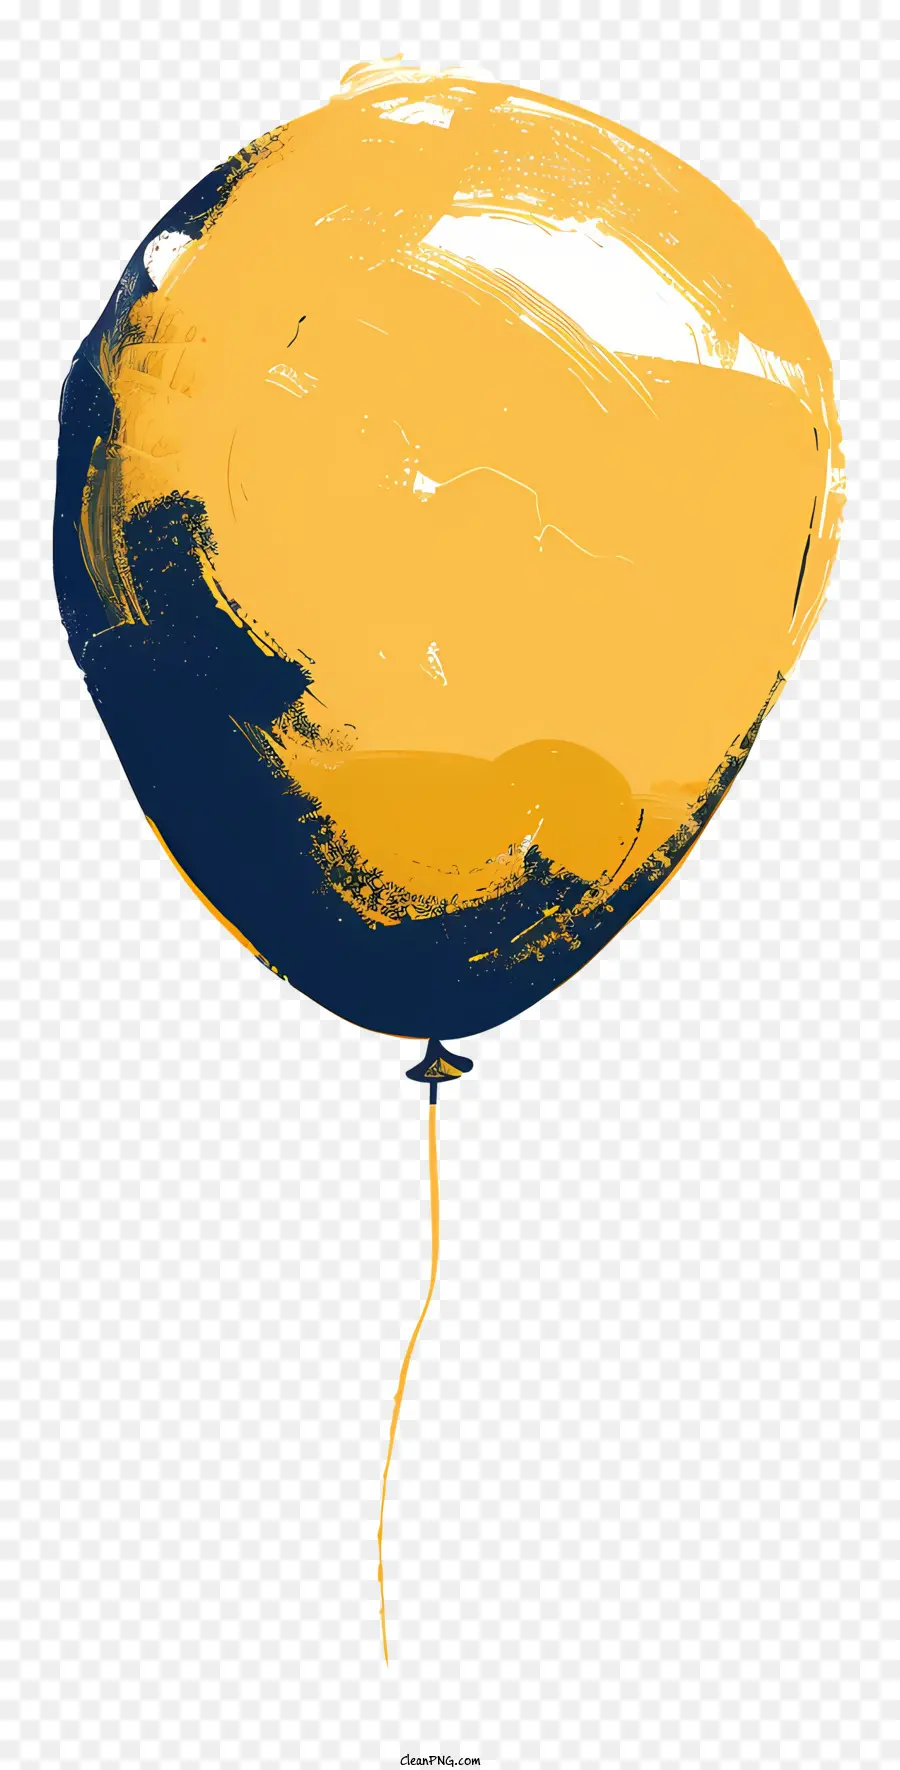 Balloon Yellow Blue Hole nền đen - Khinh khí cầu màu vàng và màu xanh với lỗ